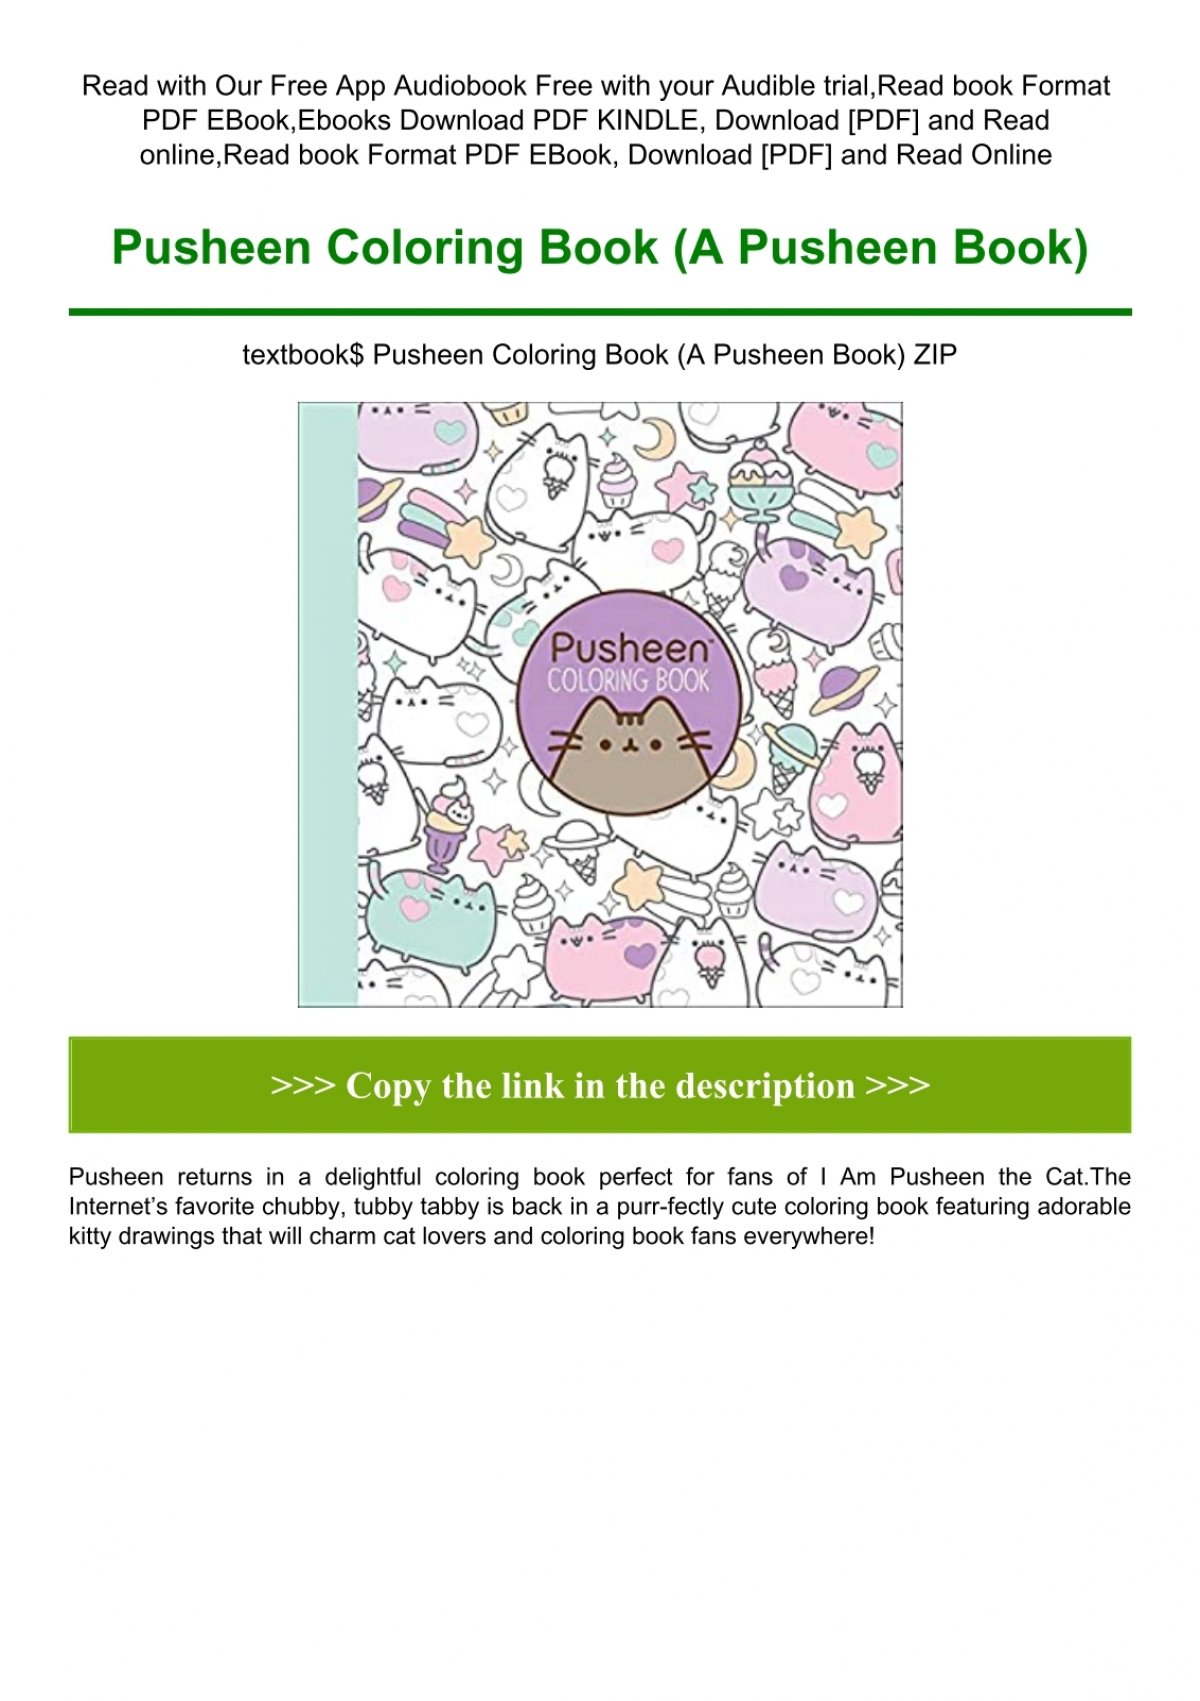 Download Textbook Pusheen Coloring Book A Pusheen Book Zip